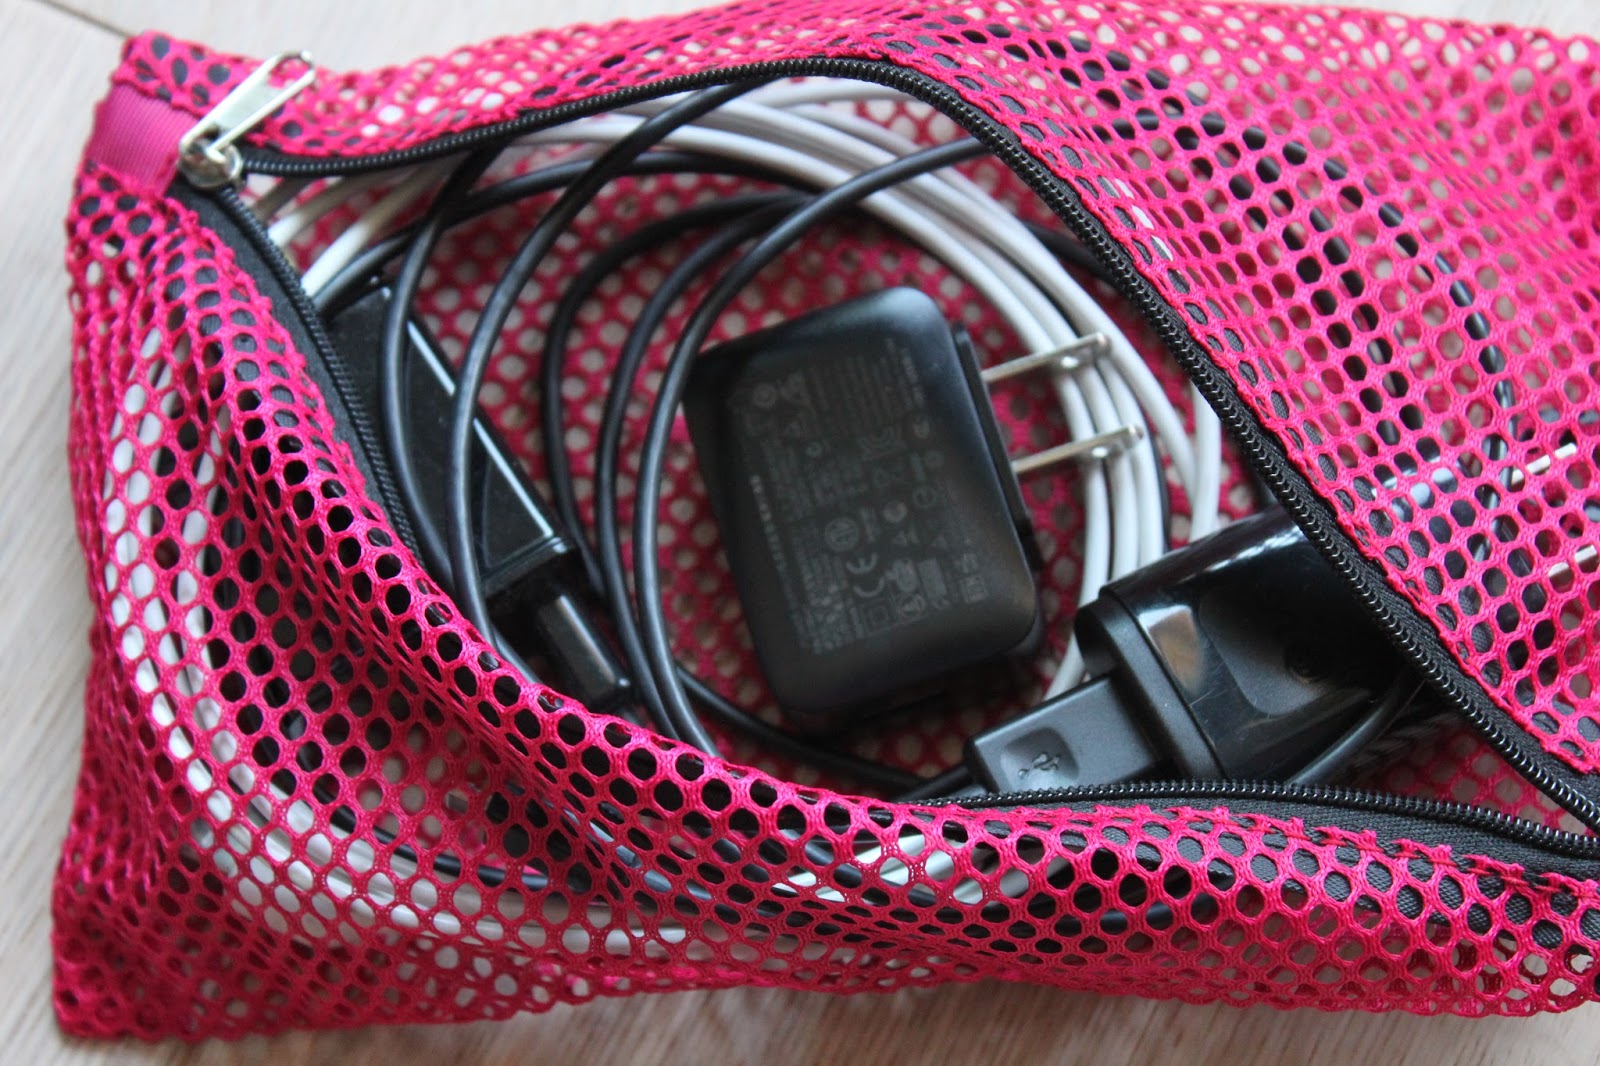 Vaultz Assorted Mesh Storage Bags with Zipper